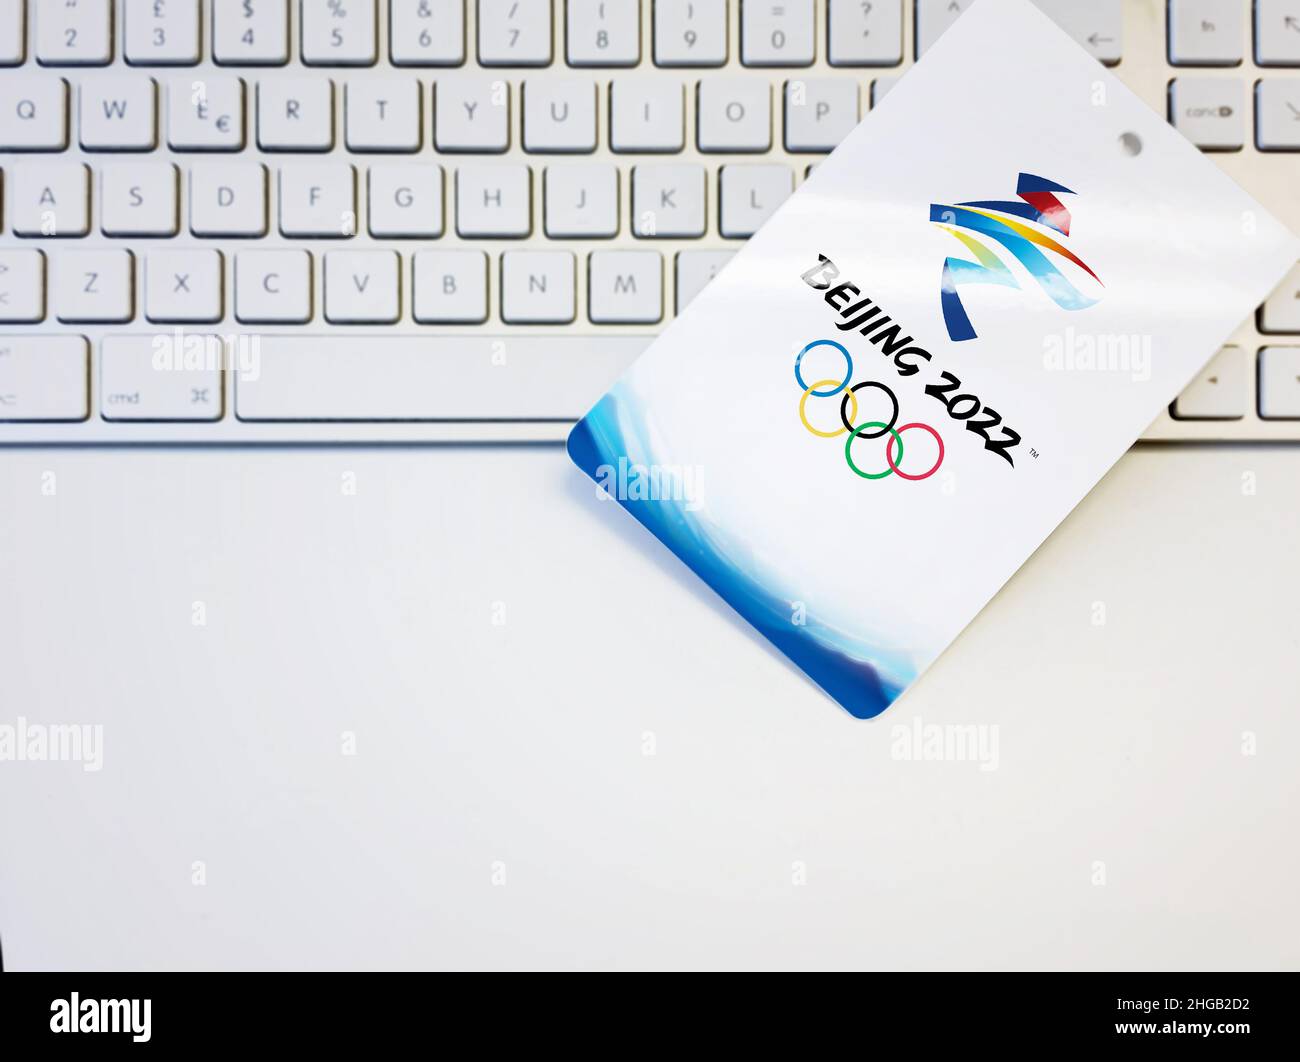 Beijing, Chine, octobre 2021 : badge blanc vierge avec le logo des Jeux olympiques d'hiver de Beijing 2022 sur un clavier d'ordinateur.Événement international. Banque D'Images